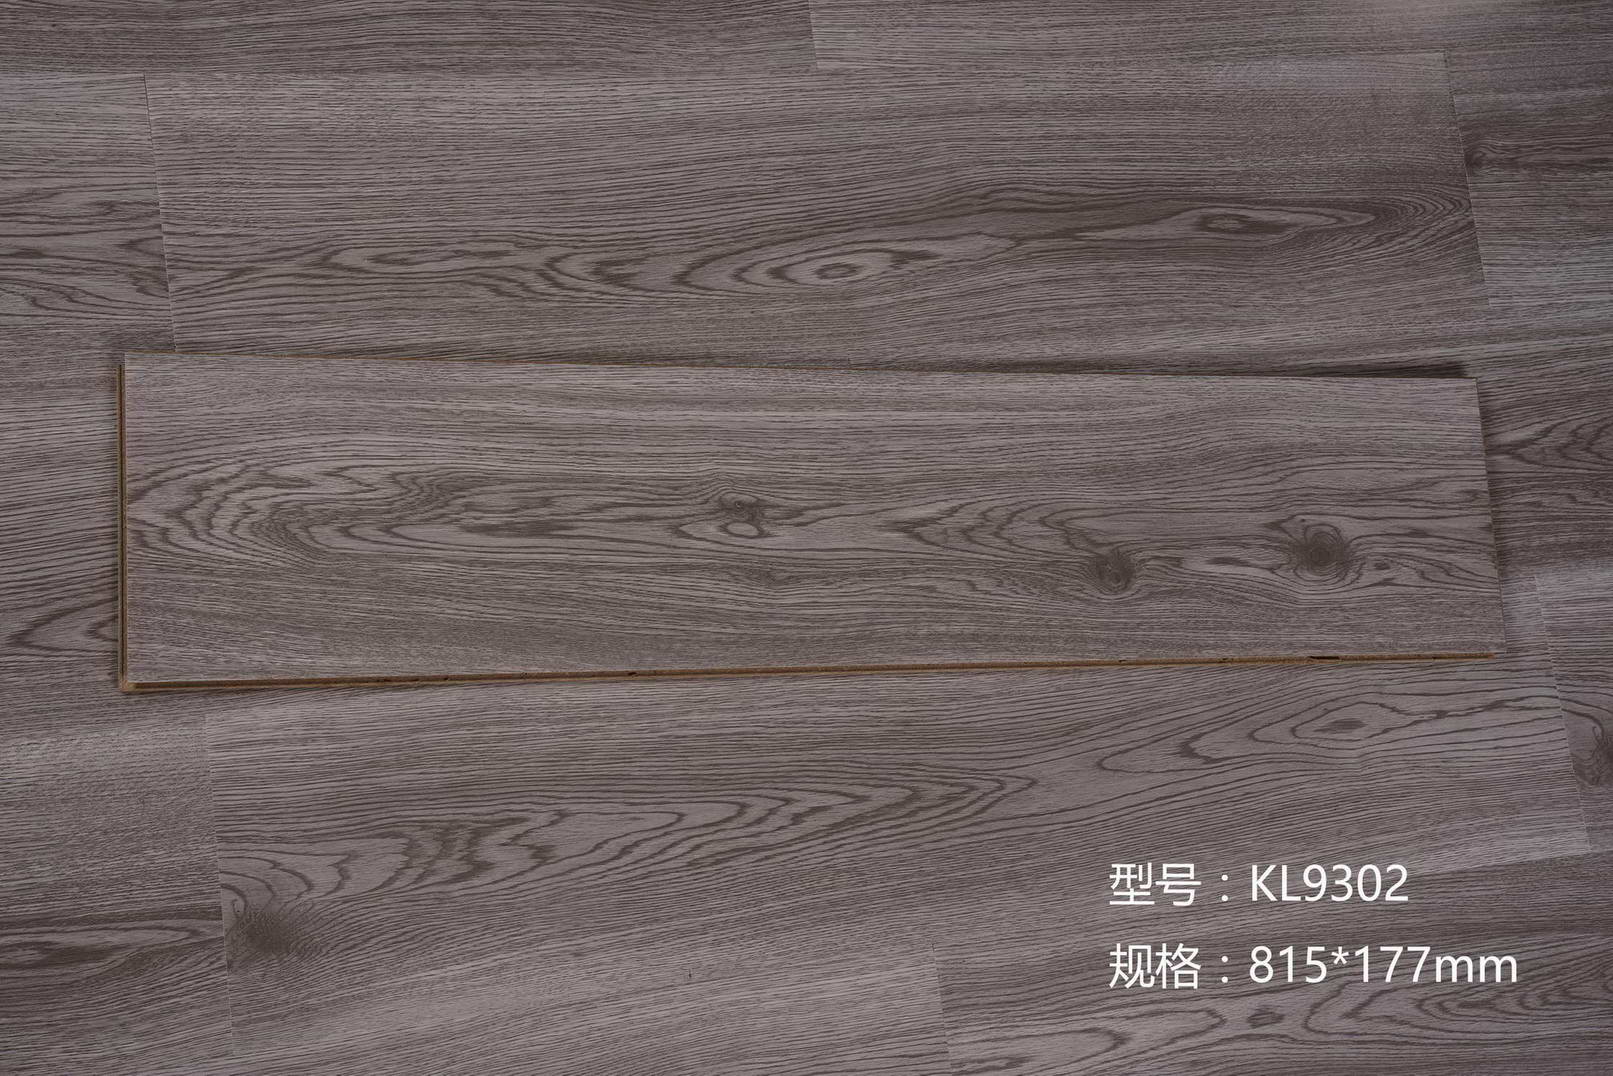 科林品牌 绿色选材 E1级大豆环保用胶 高清耐磨花色纸 强化复合地板4